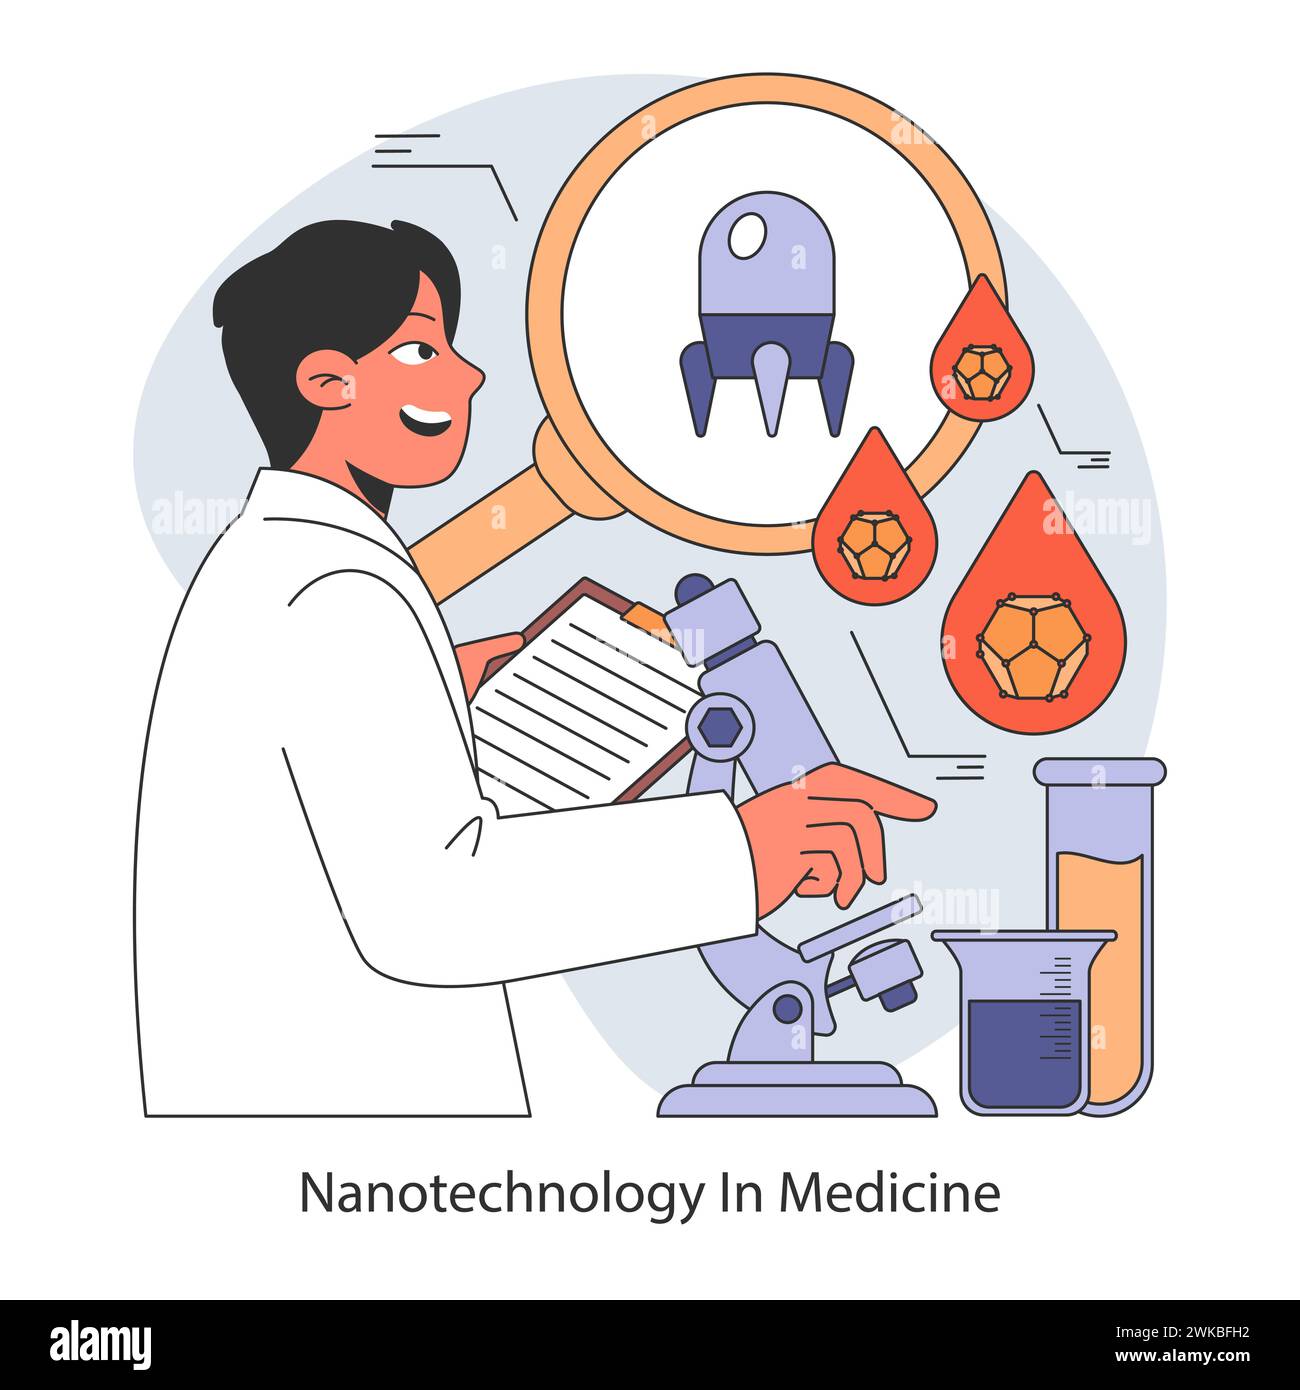 Medical Frontiers Konzept. Nanotechnologie in der Medizin ermöglicht gezielte Arzneimittelabgabe und innovative Diagnostik. Illustration des flachen Vektors. Stock Vektor